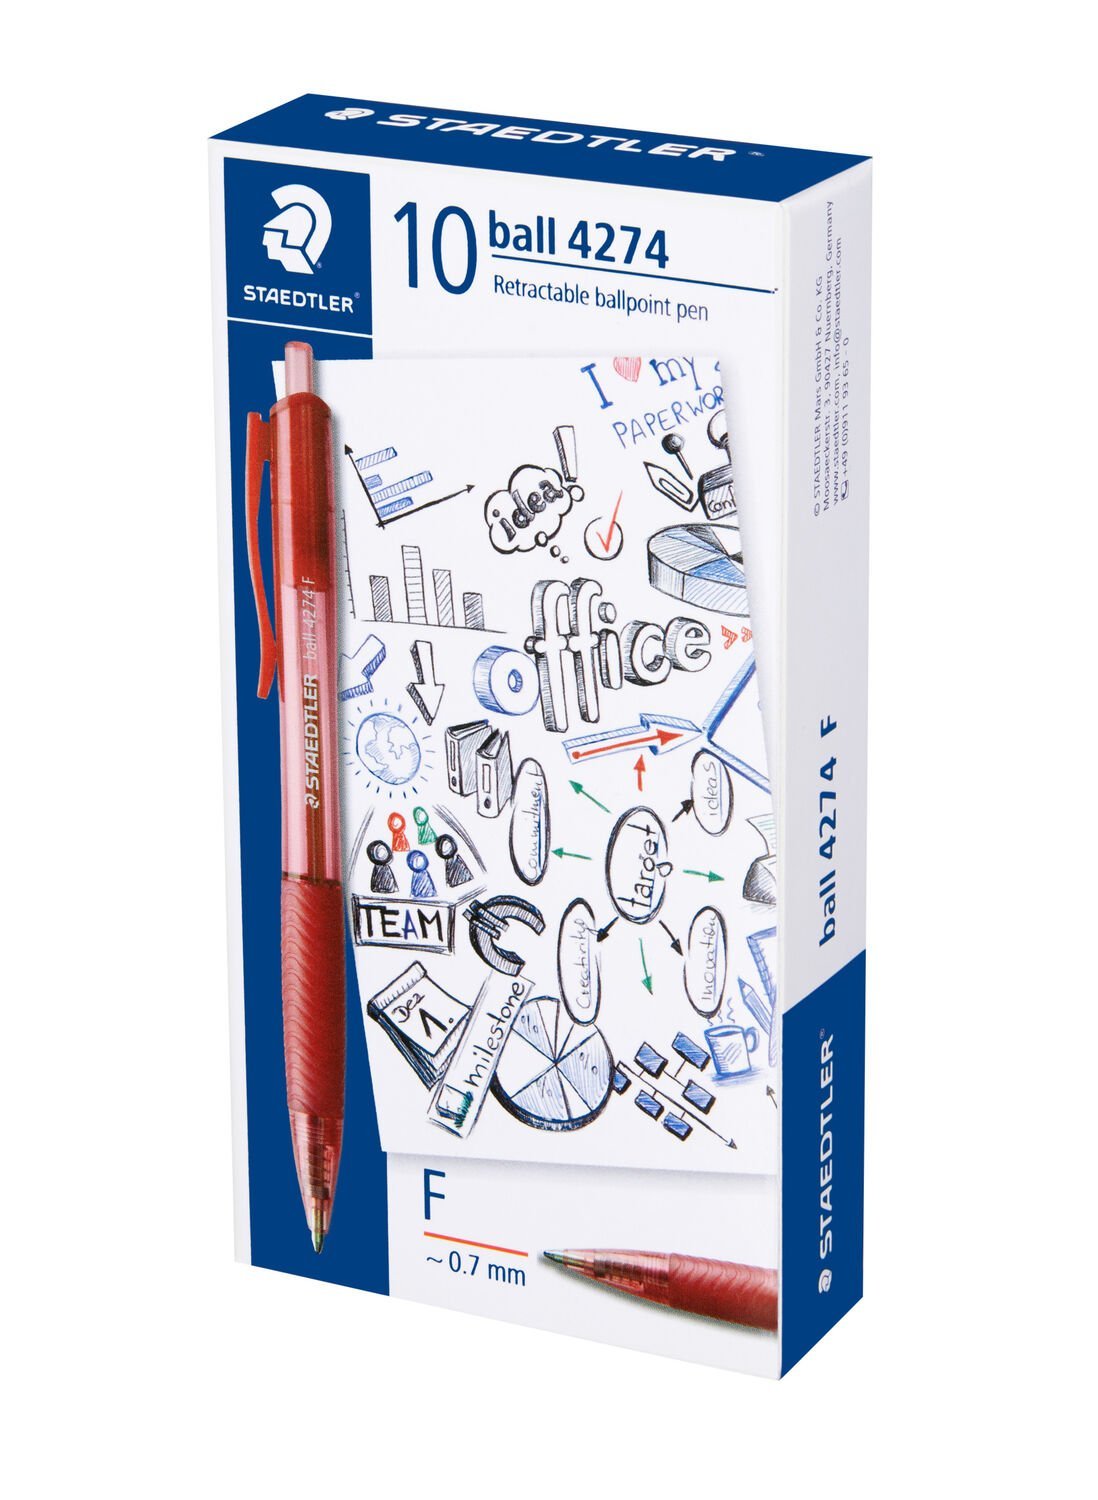 Ball 4274 - Retractable Ballpoint Pen